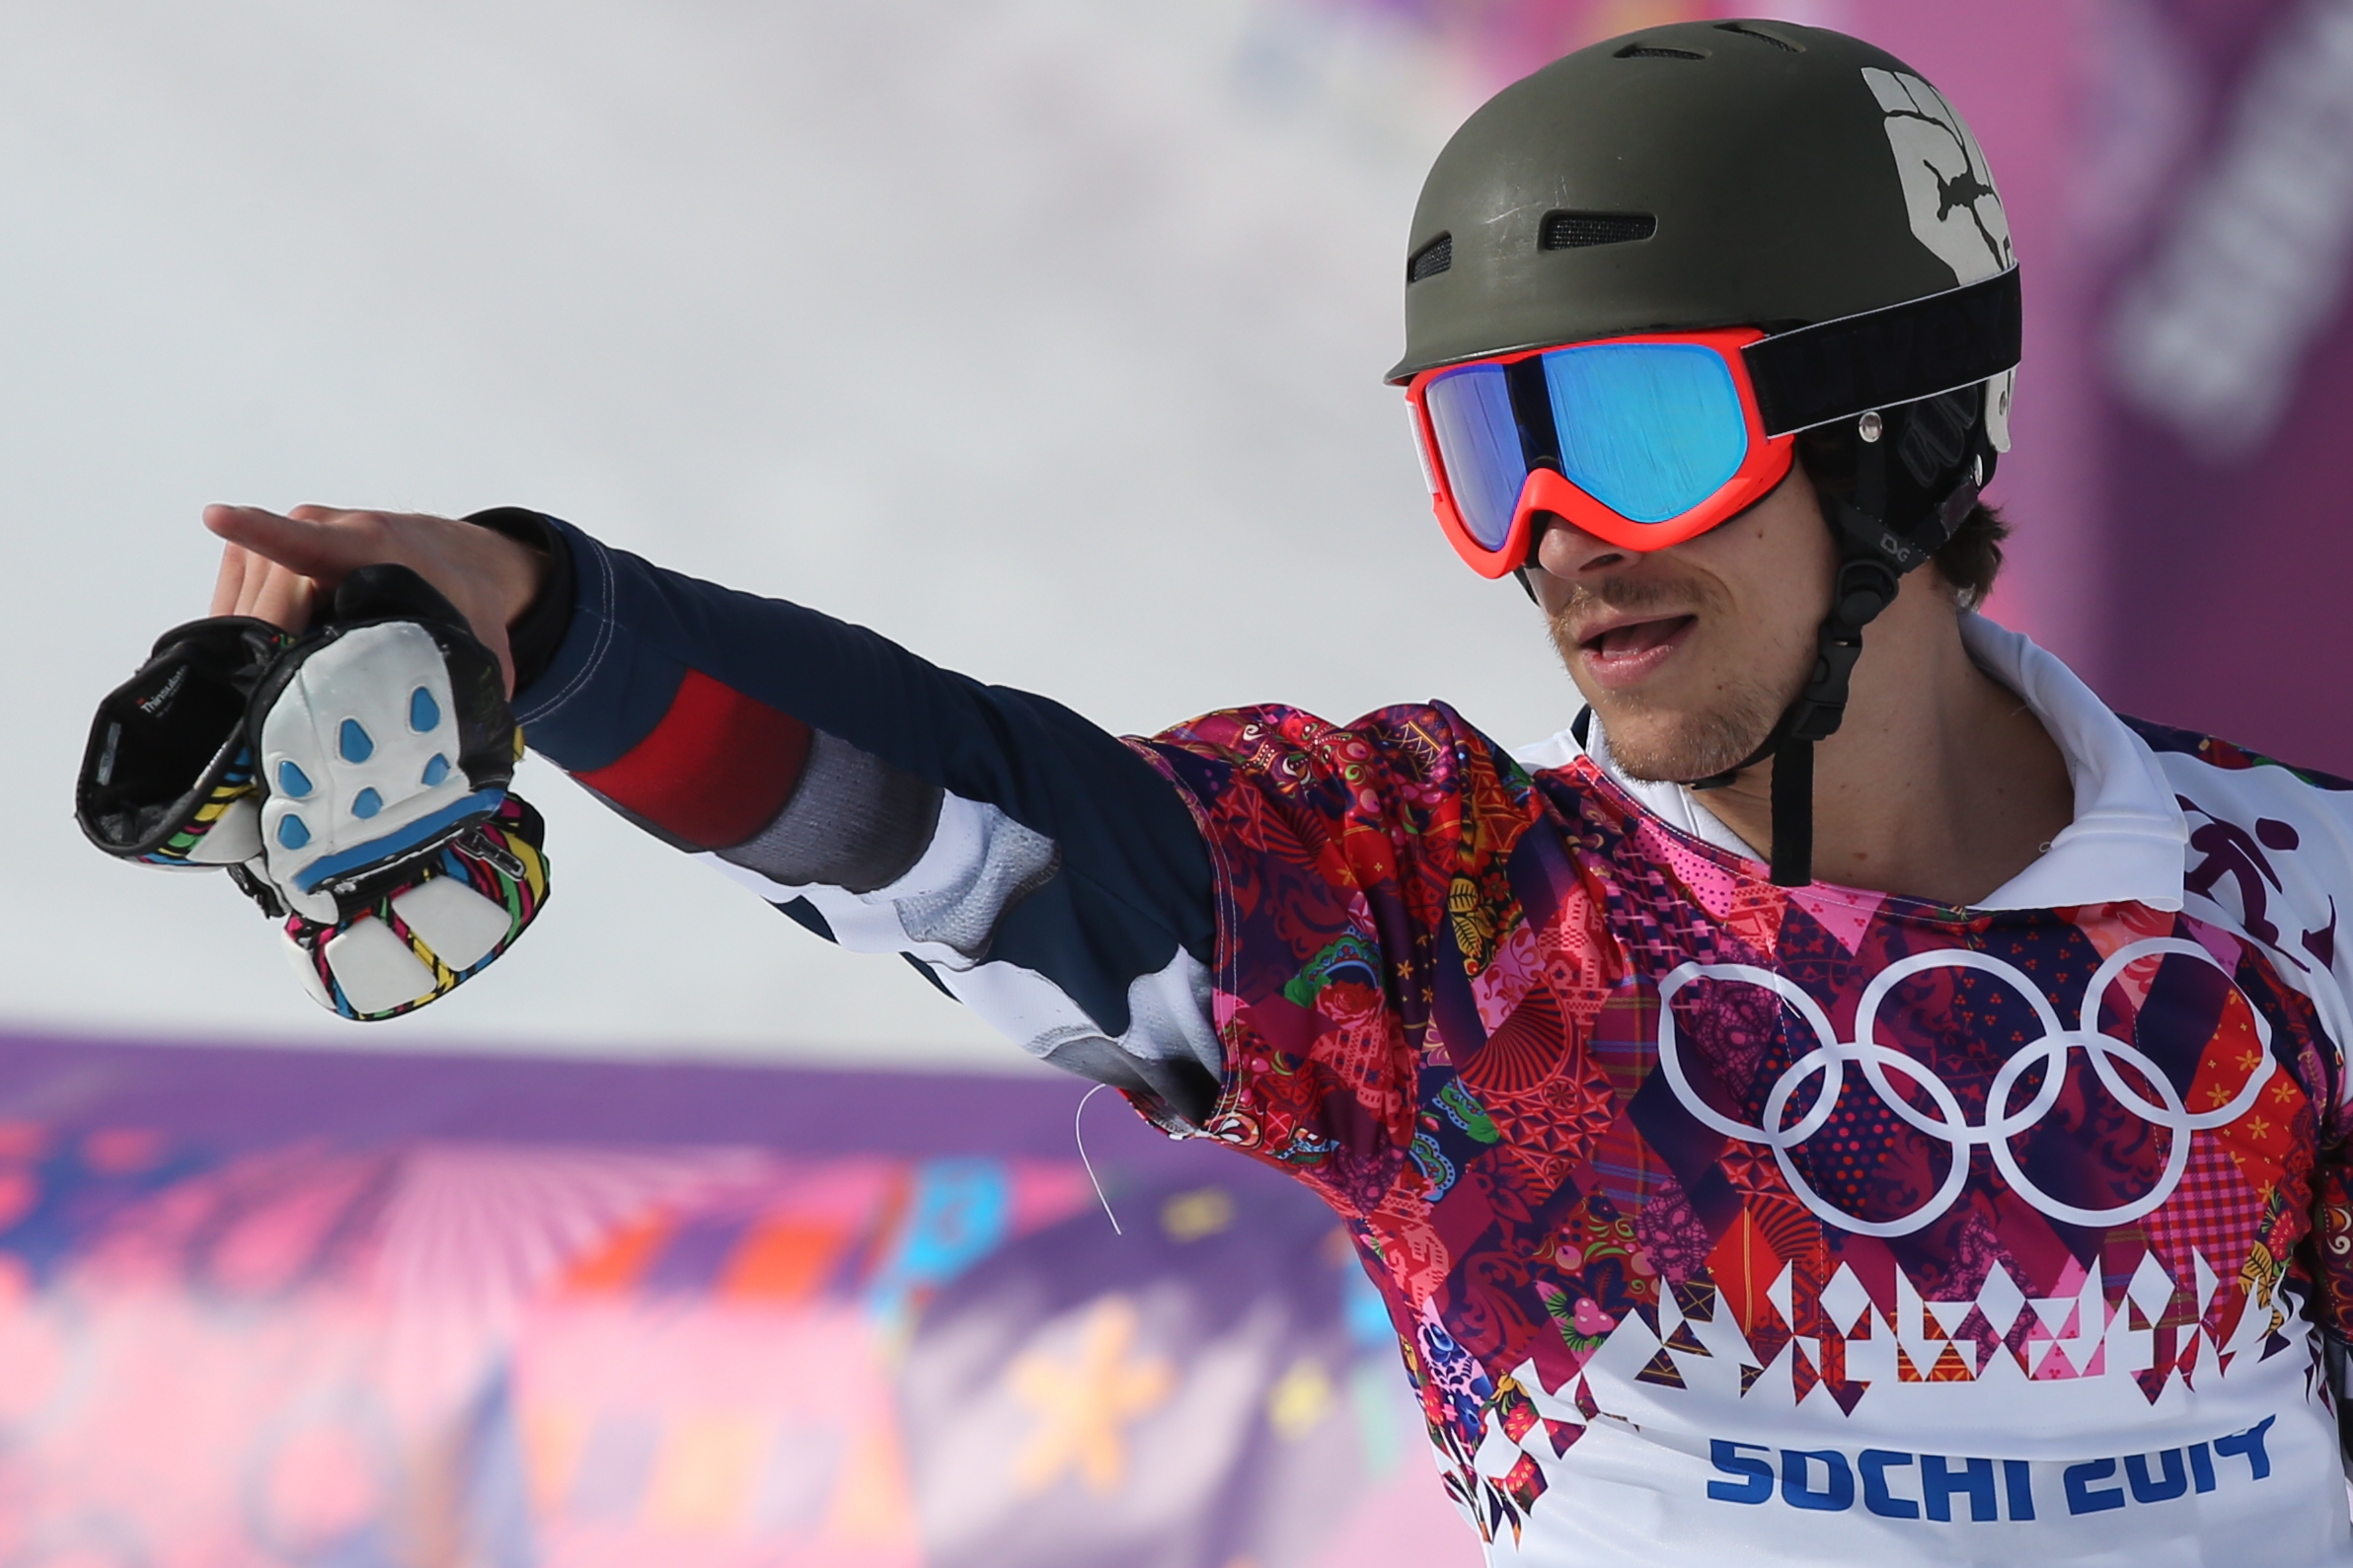 Сноубордист, выигравший две золотые медали на Олимпийских играх в Сочи, приехал на сборы в Кисловодск